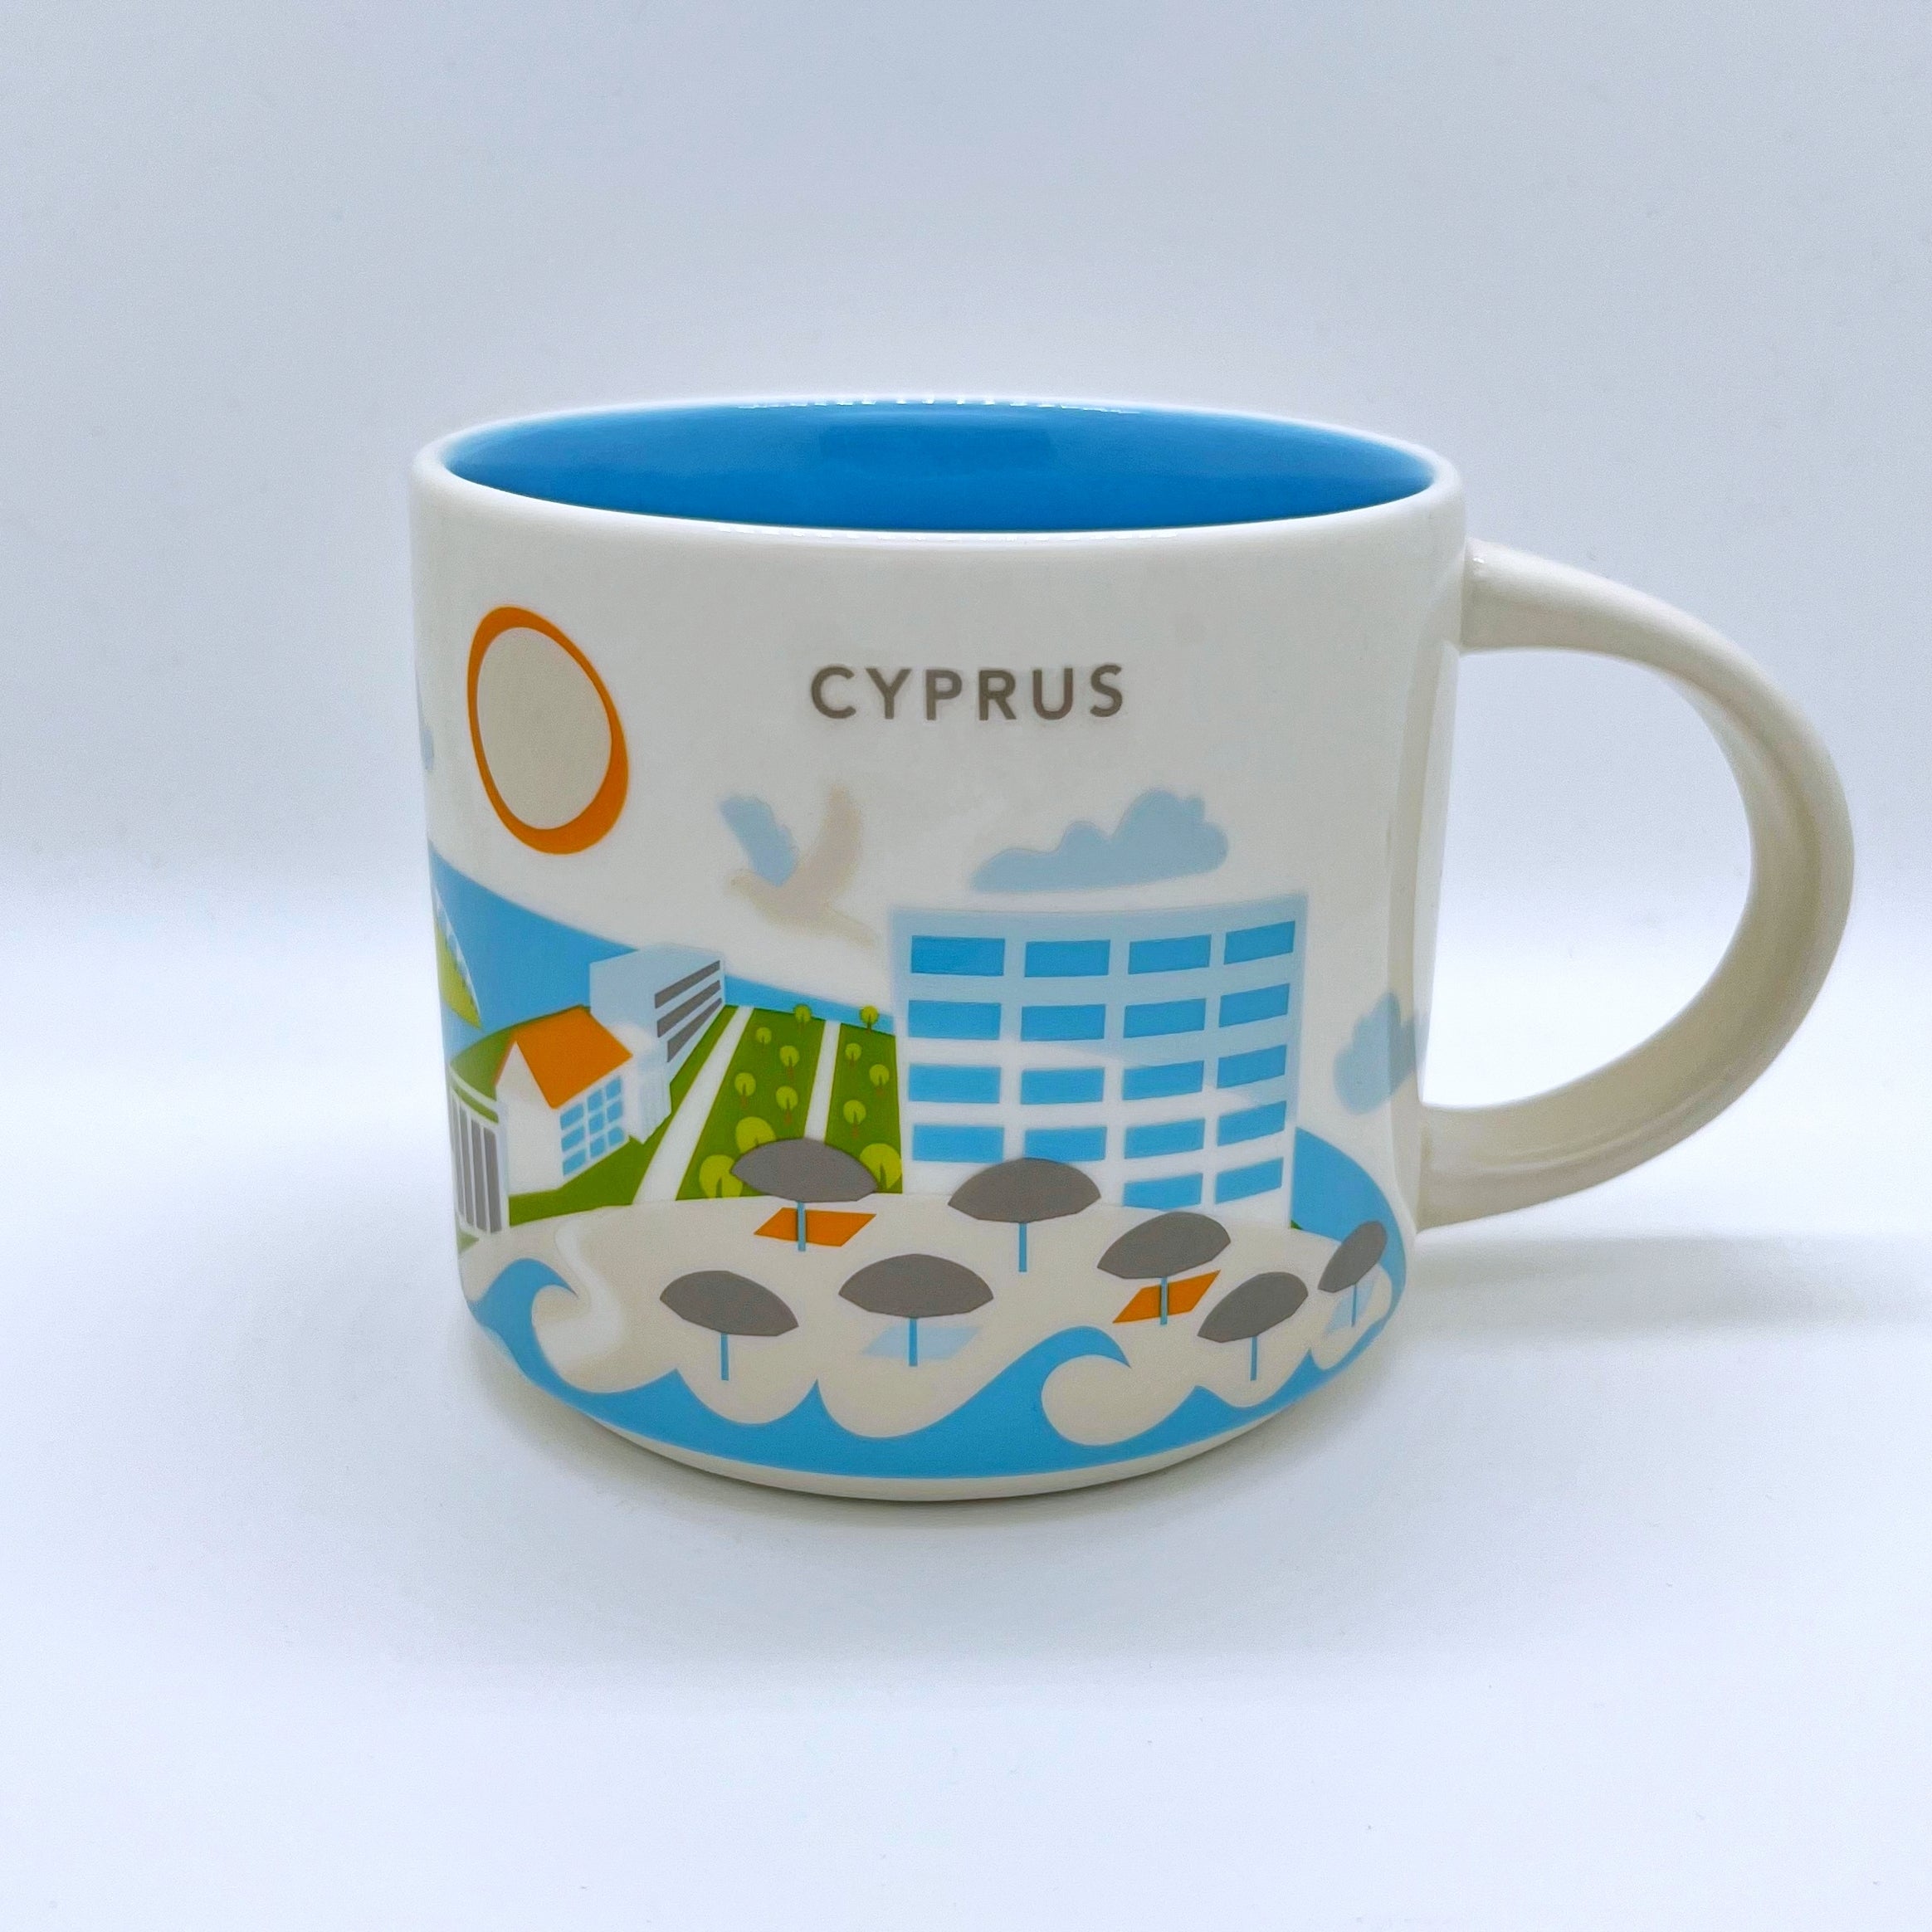 Kaffee Tee und Cappuccino Tasse von Starbucks mit gemalten Bildern aus dem Land Zypern 